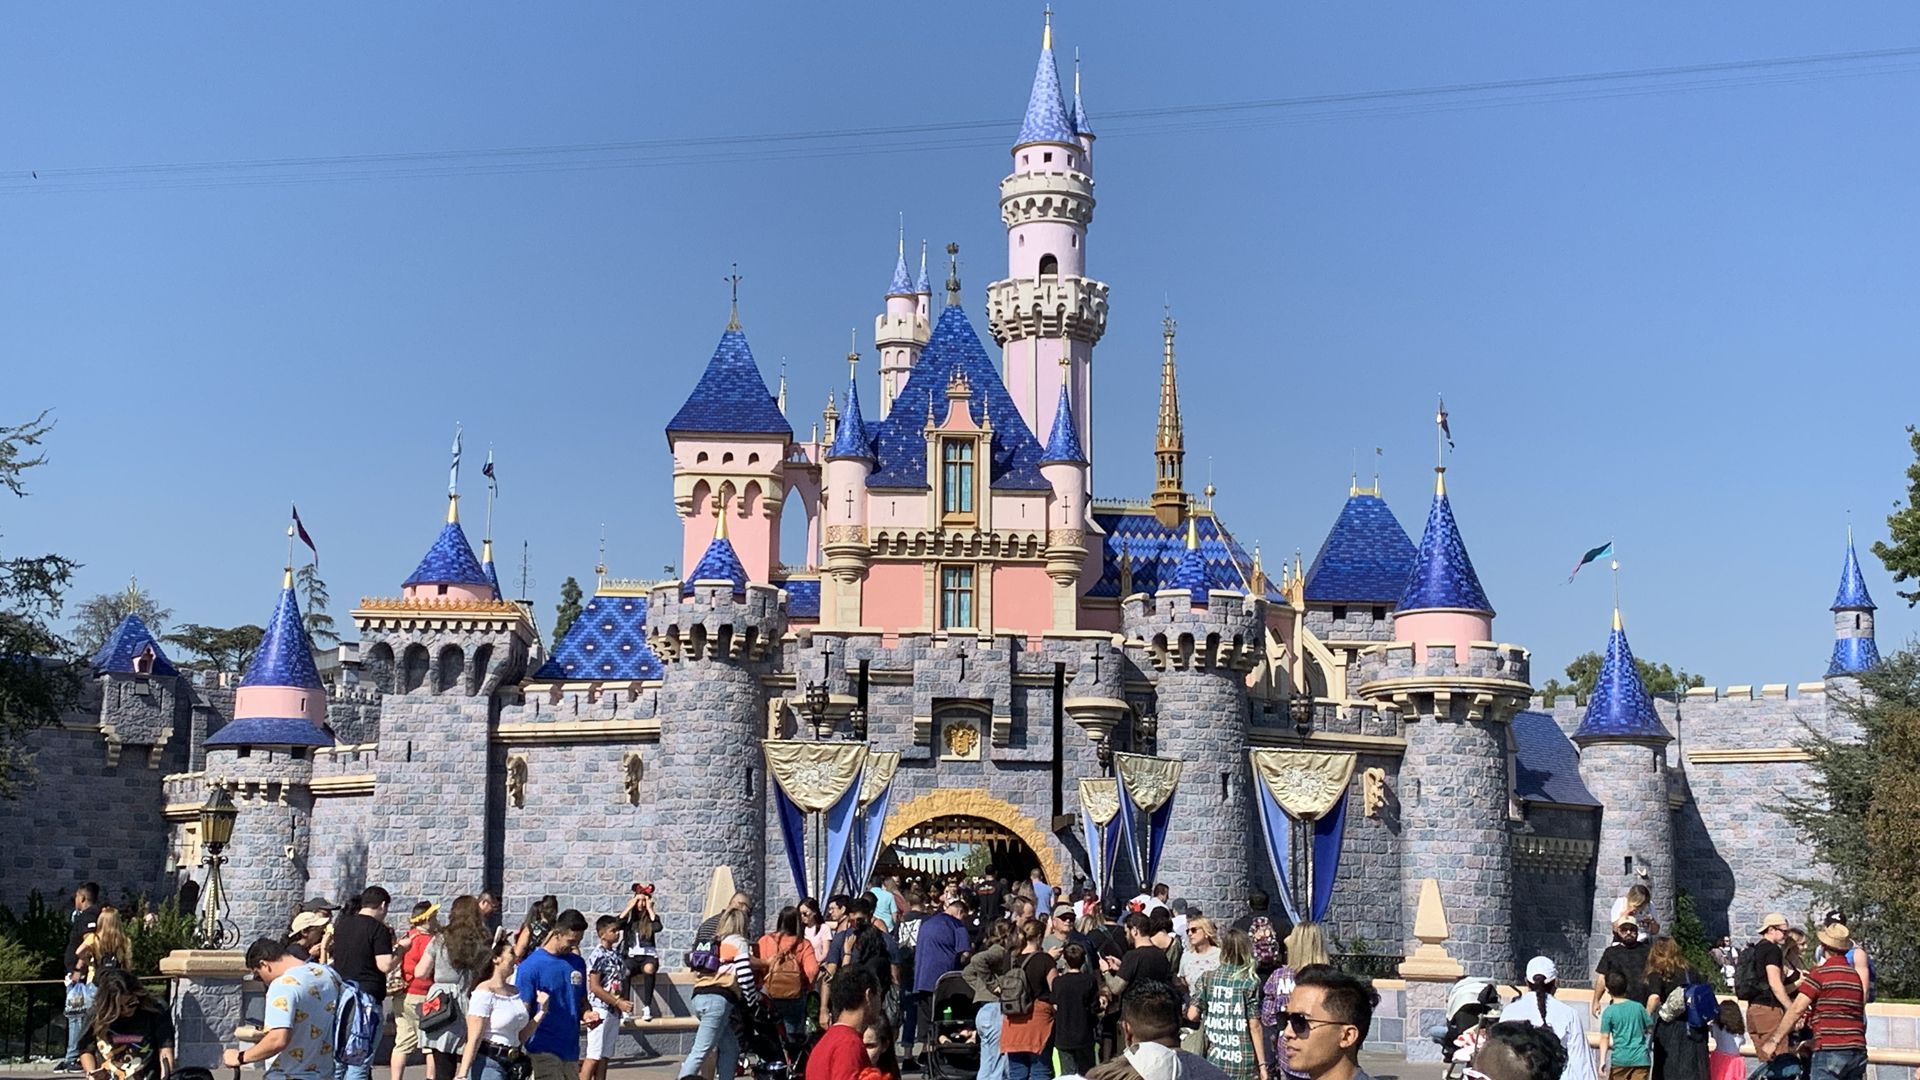 Disneyland is a popular tourist destination in California. - Disneyland